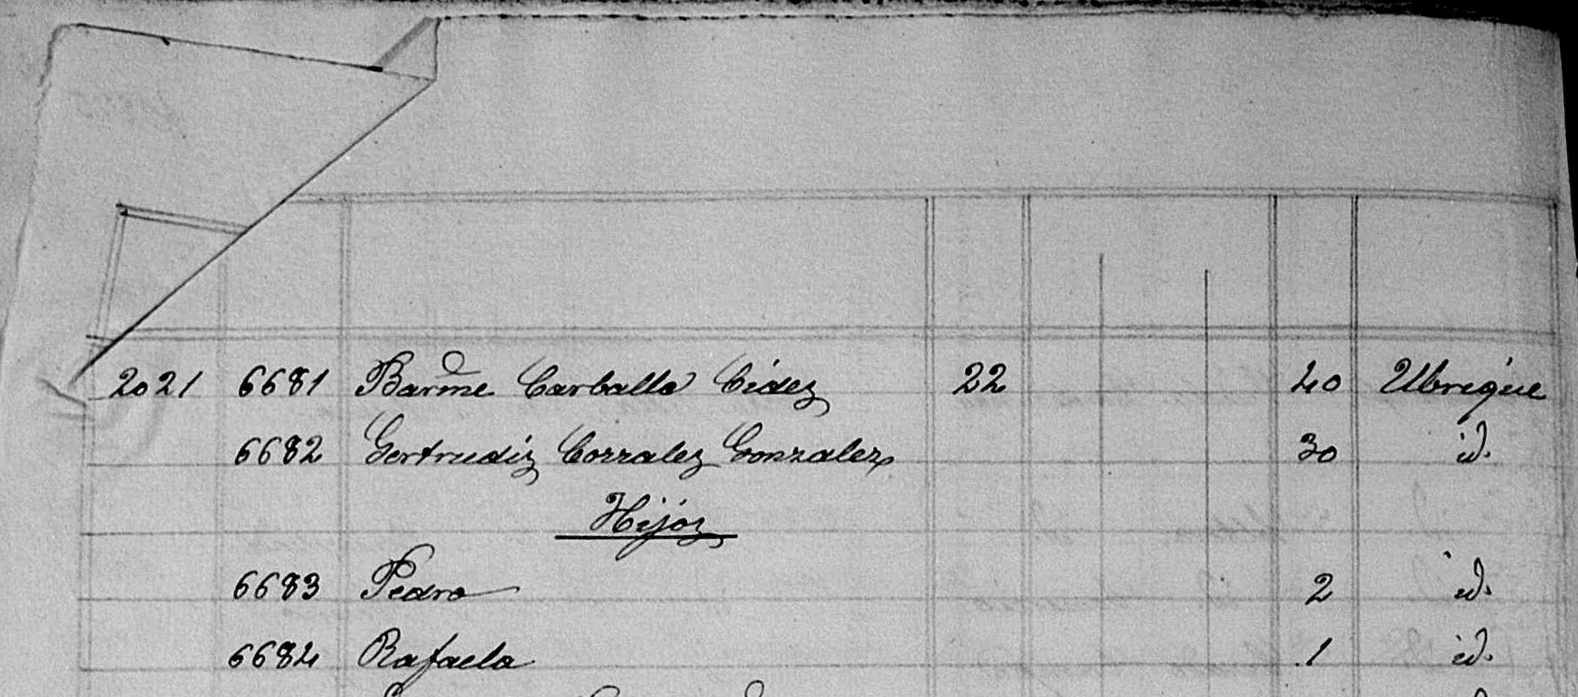 Registro de la familia de Pedro Carballo Corrales en el censo de 1889 (Copia gentileza de Manuel Zaldívar Romero).